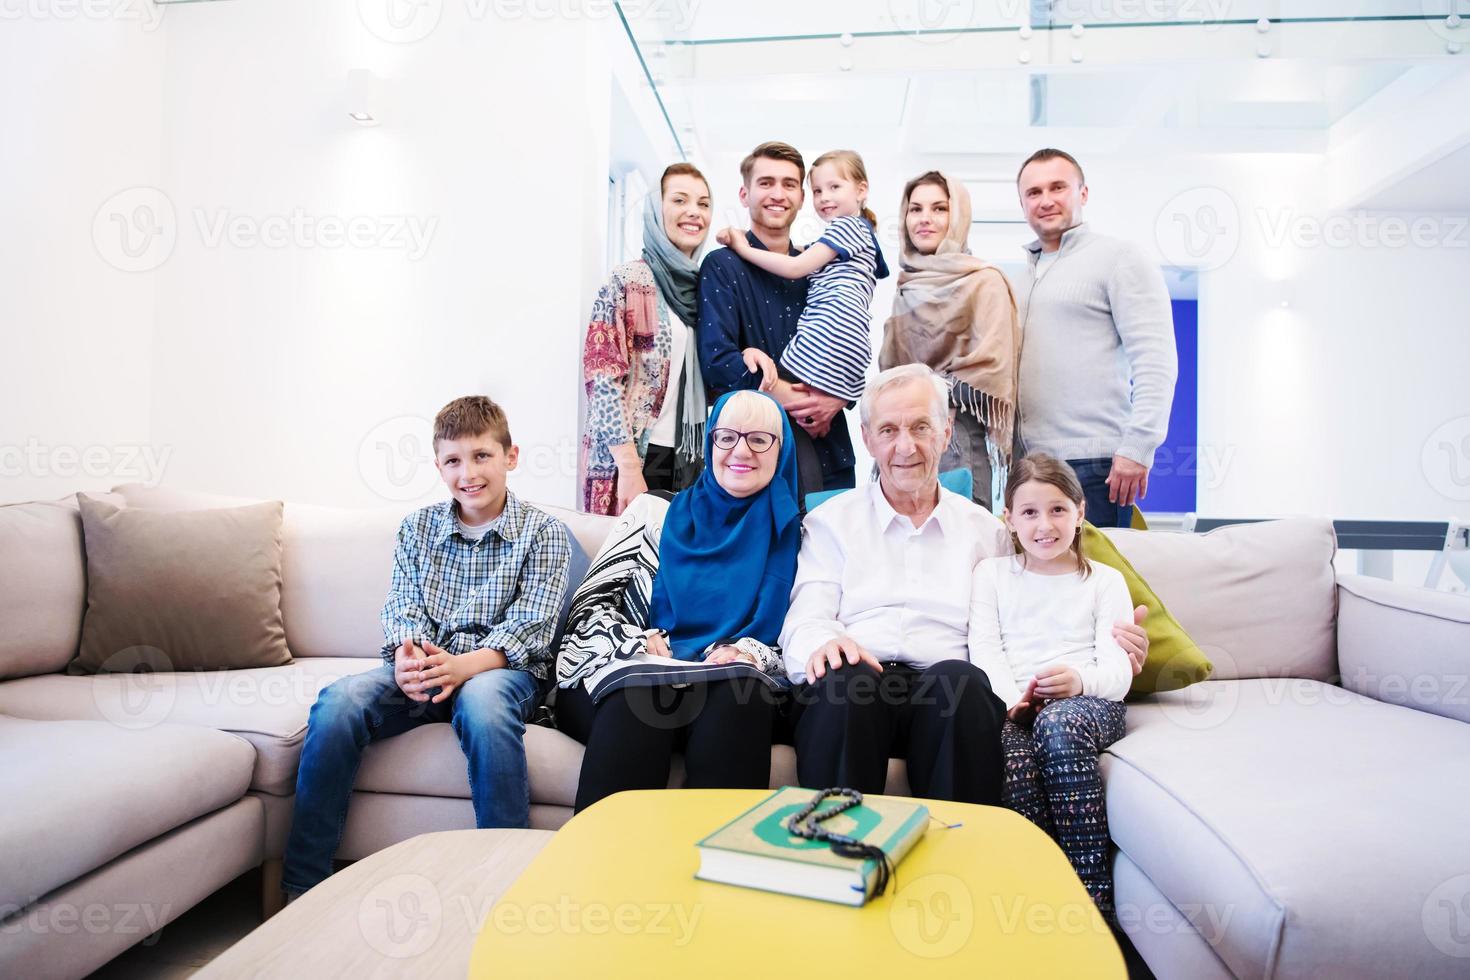 retrato de la feliz familia musulmana moderna foto